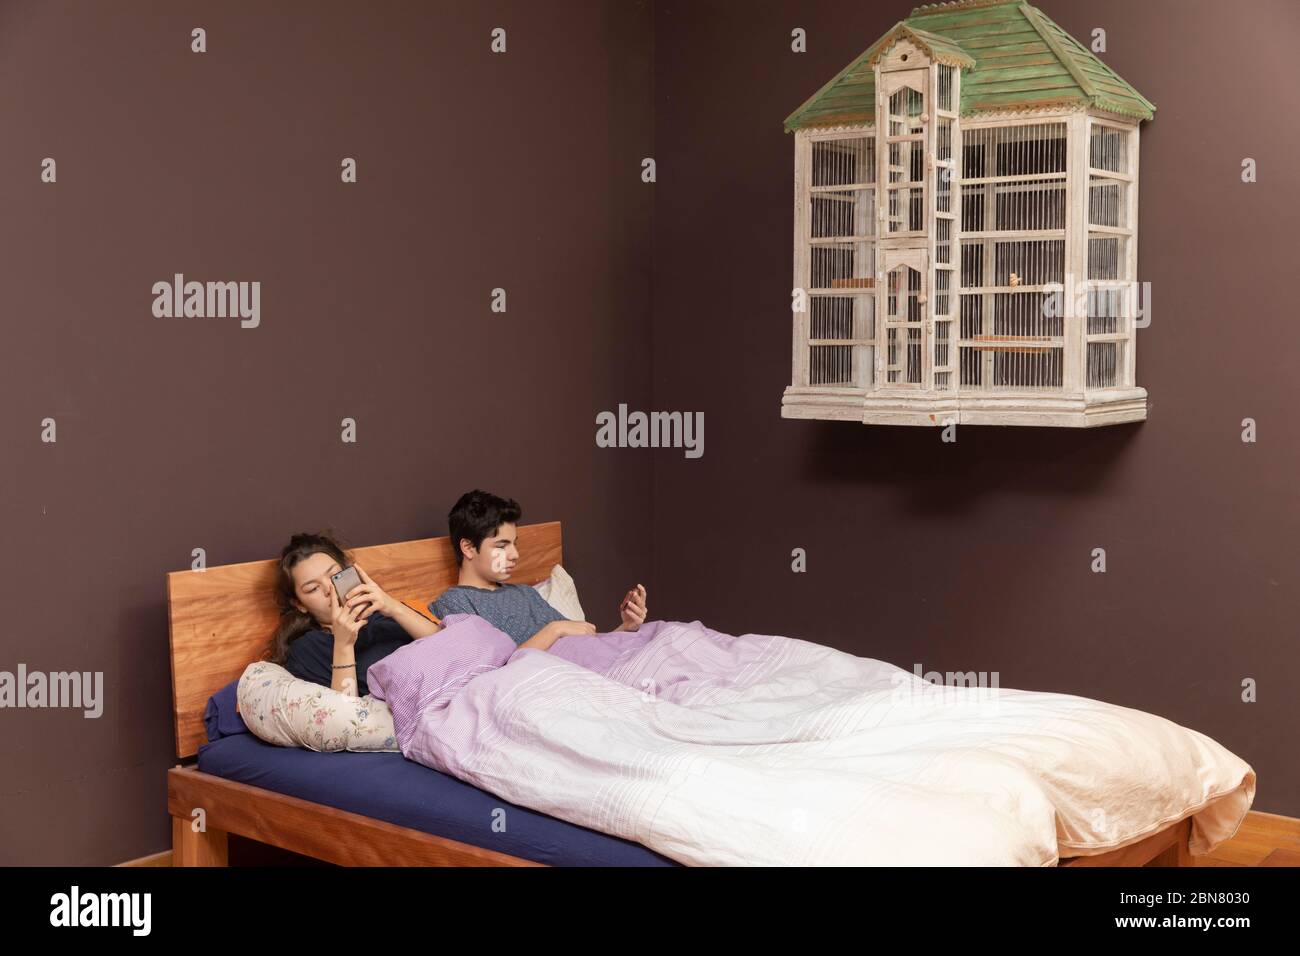 Una ragazza e un ragazzo insieme nel letto matrimoniale. Anche se sono insieme, tutti sono soli con il suo telefono. Foto Stock